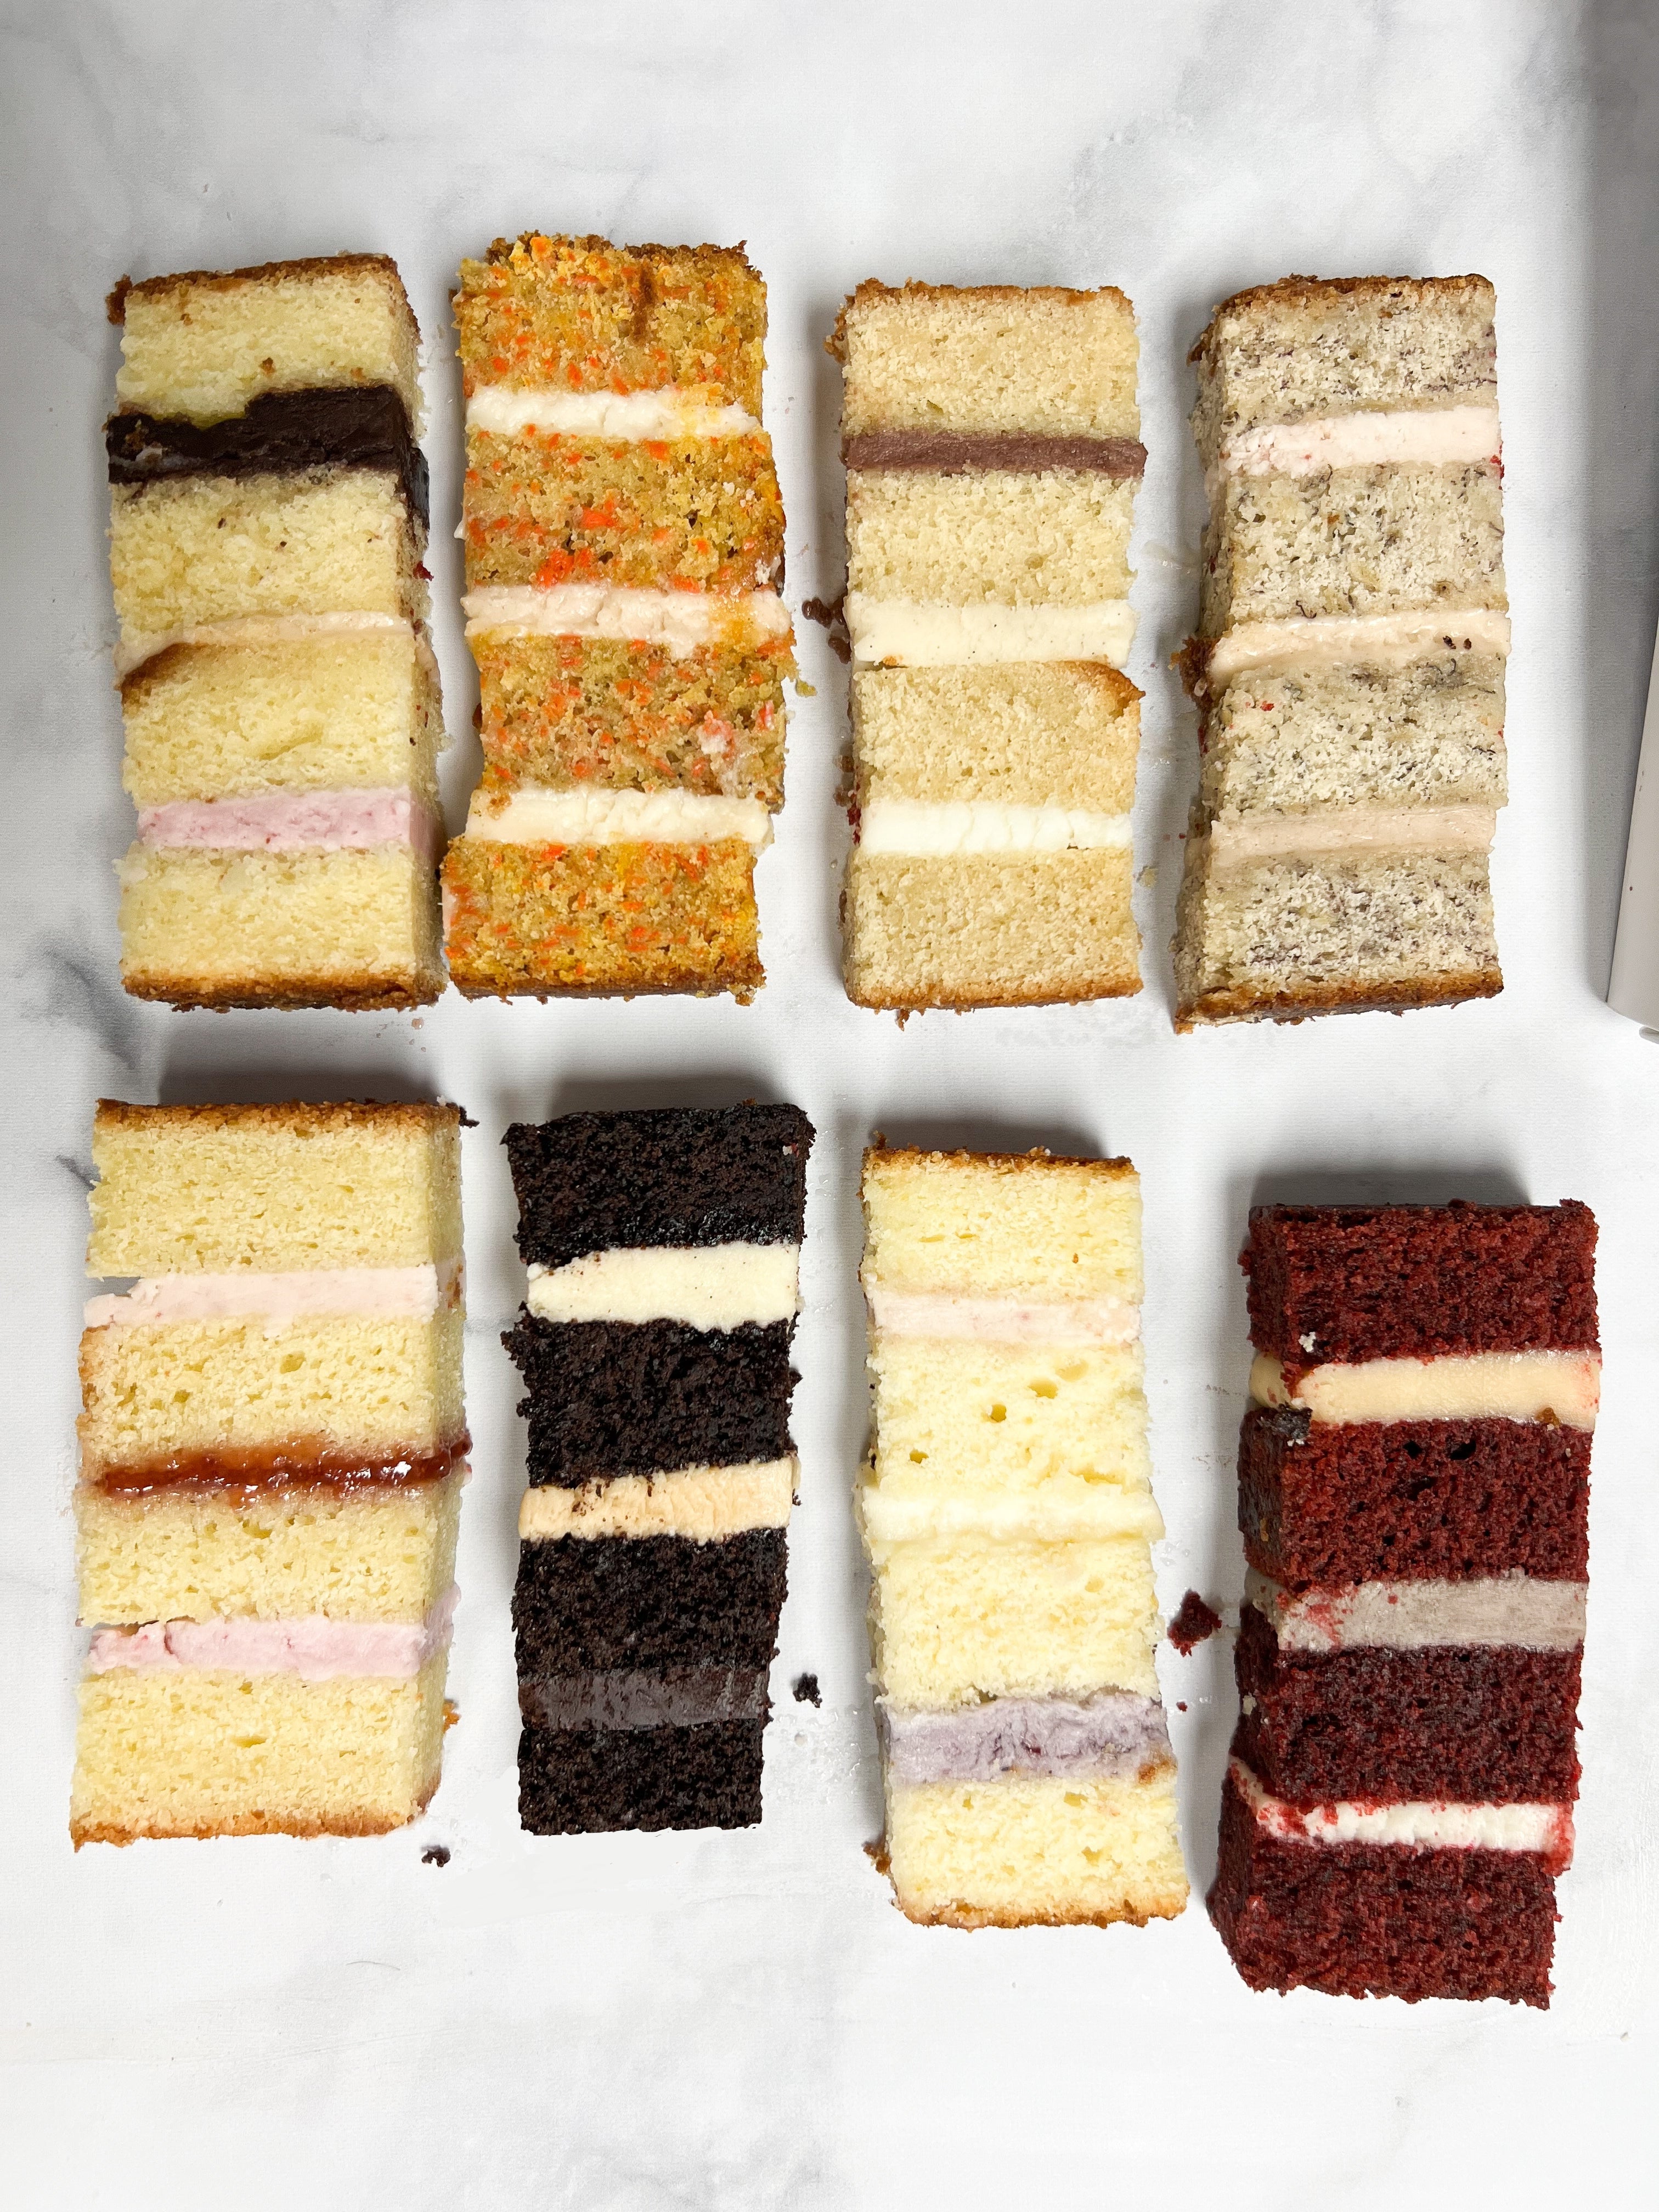 21 Delicious Wedding Cake Flavor Combinations